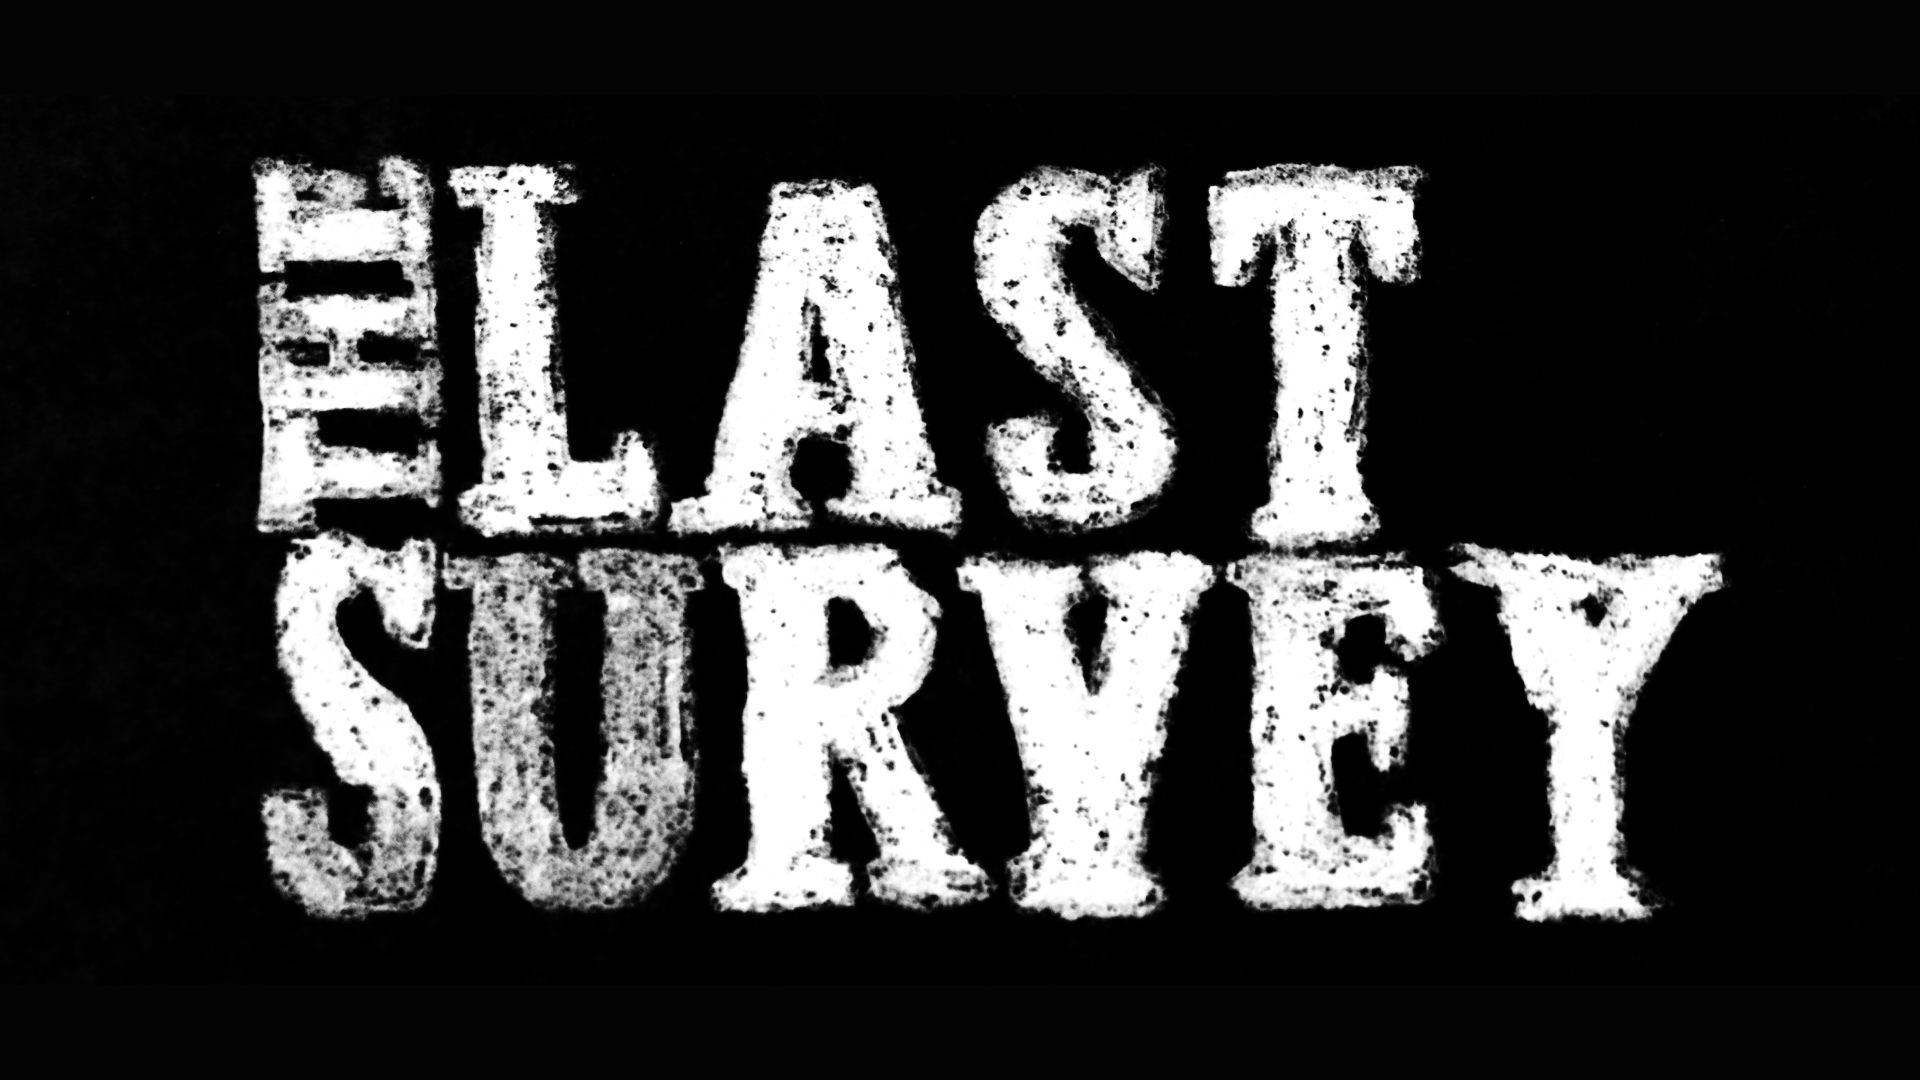 The Last Survey